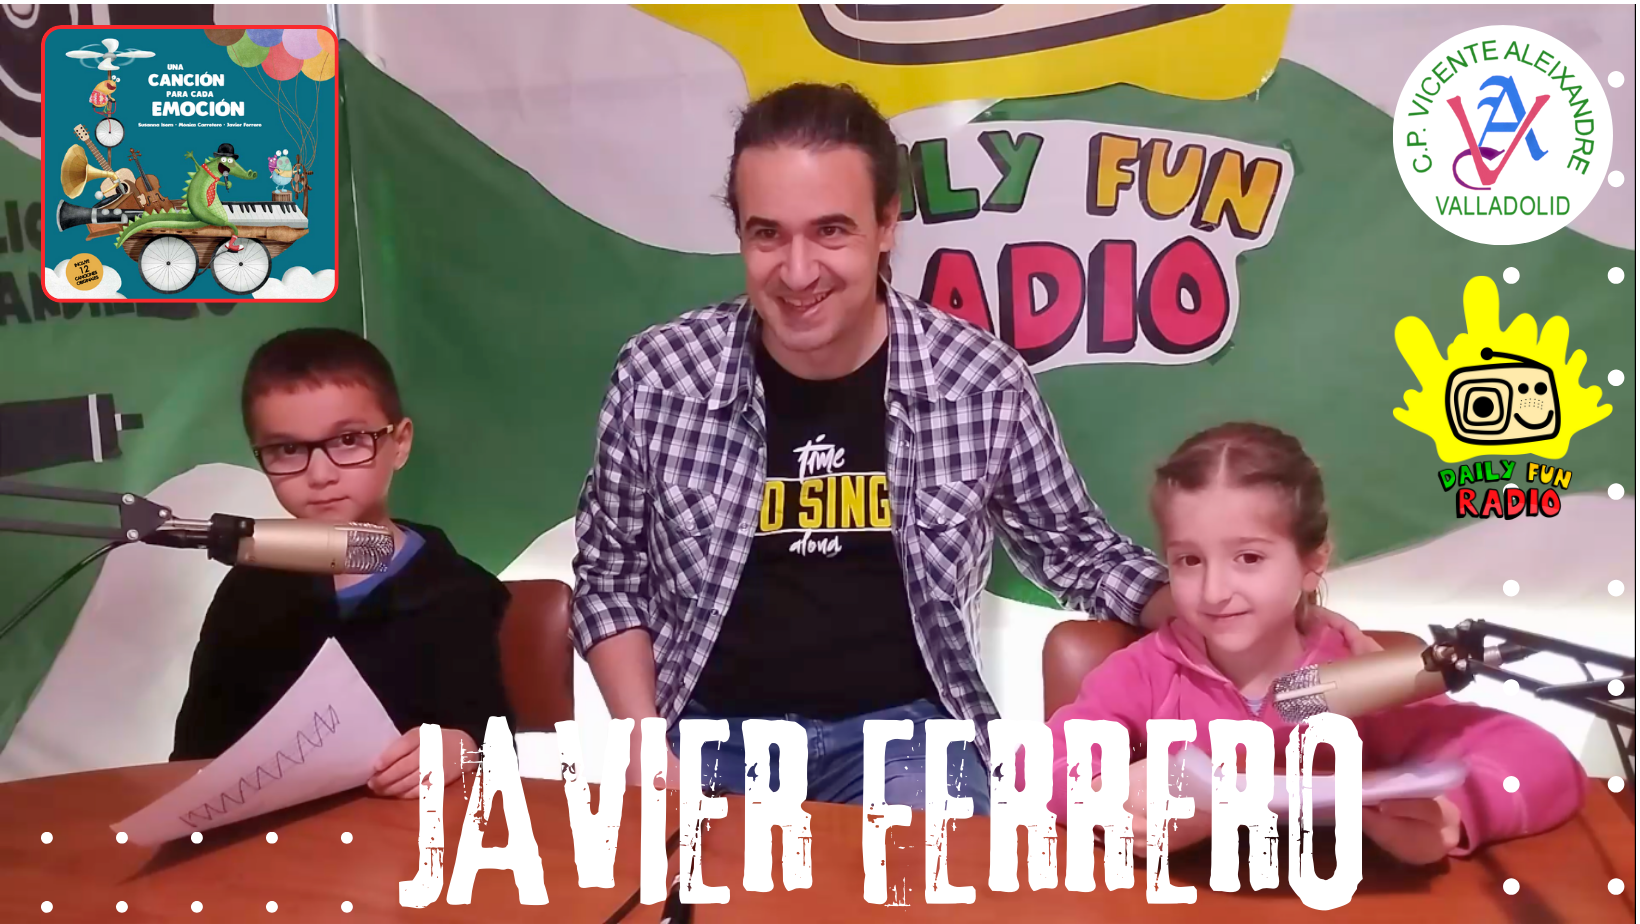 Daily Fun Radio Javier Ferrero